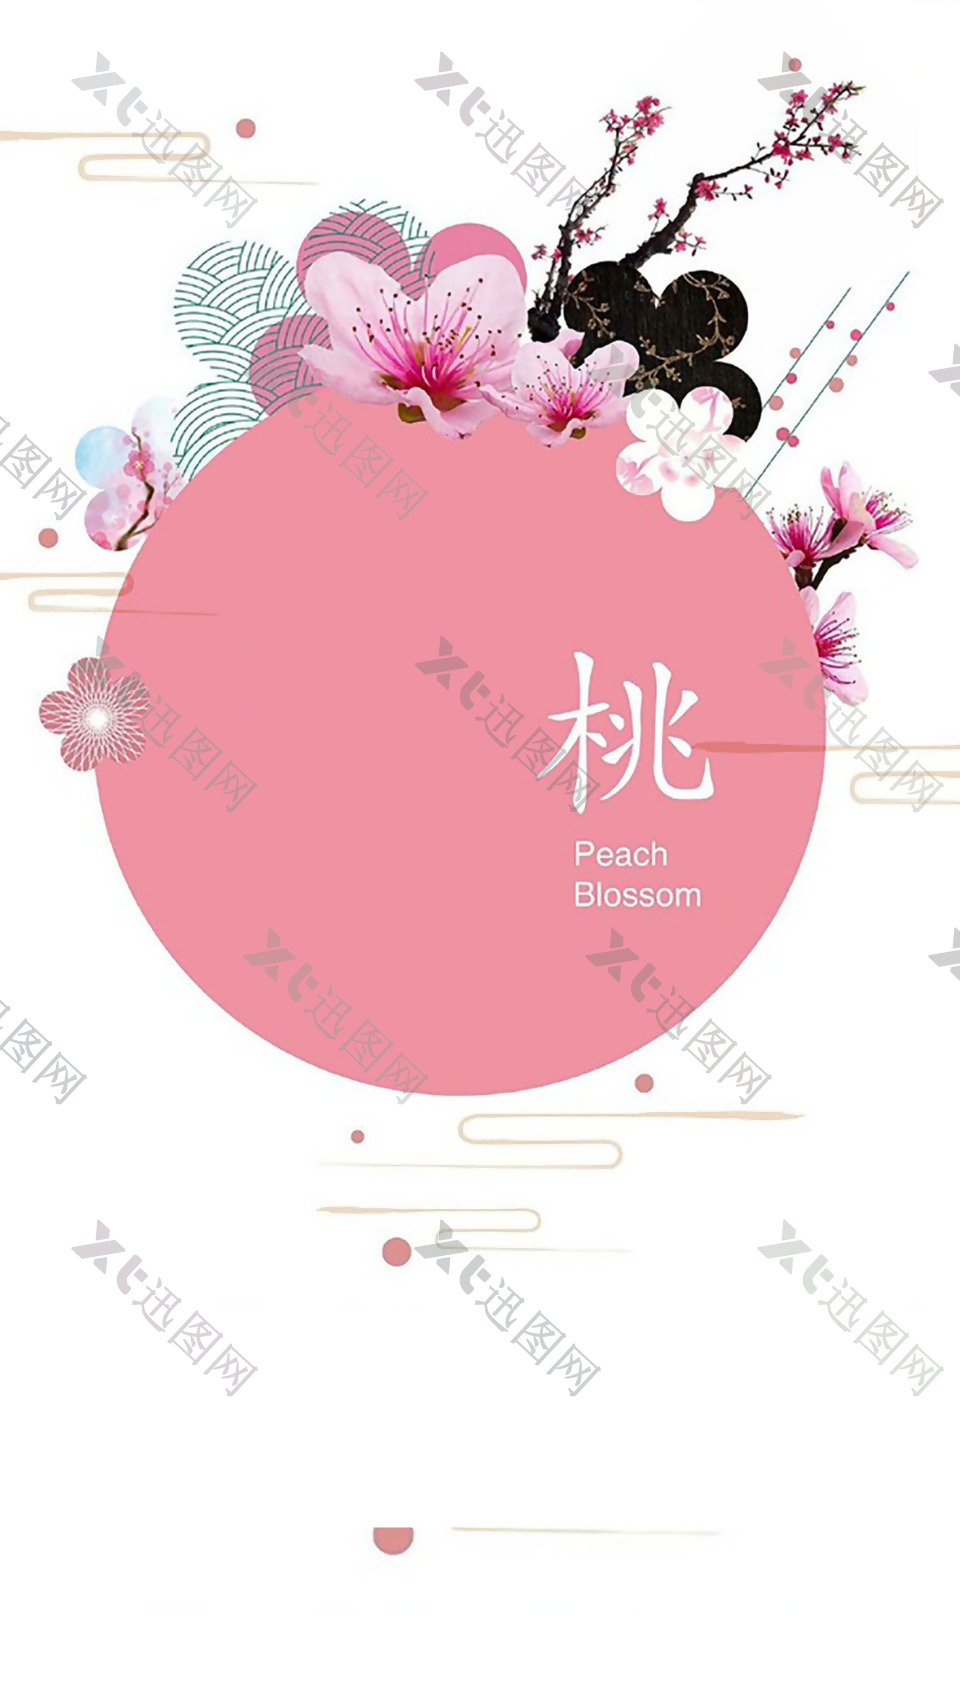 唯美粉色桃花H5背景素材